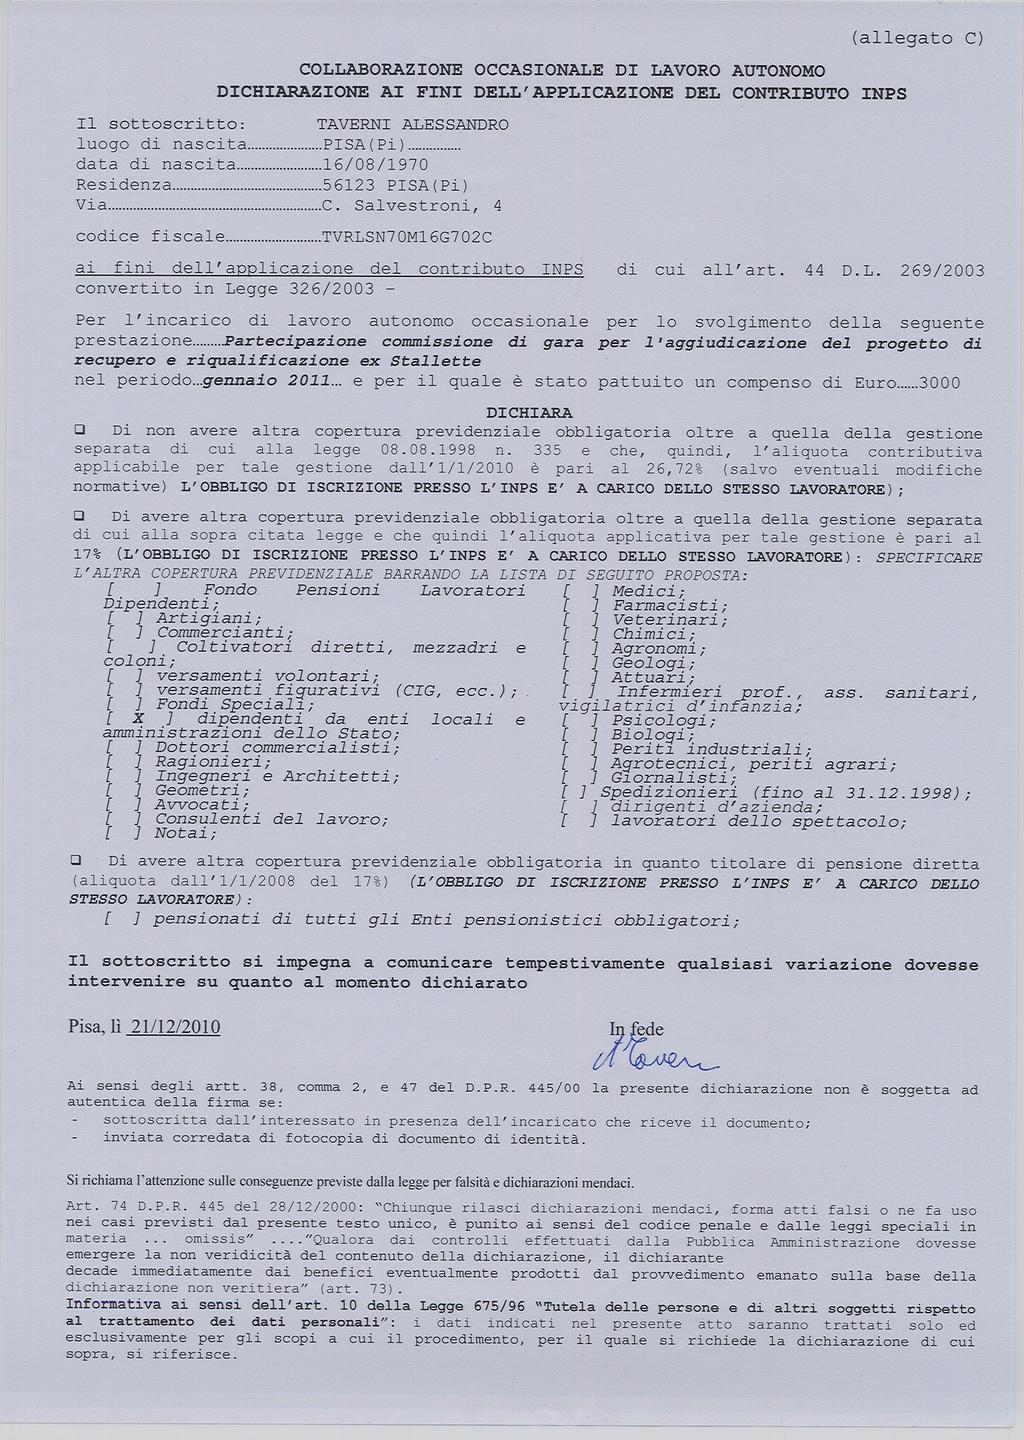 Documento firmato digitalmente ai sensi del TU n. 445/00, dell'art.20 del D.lgs.